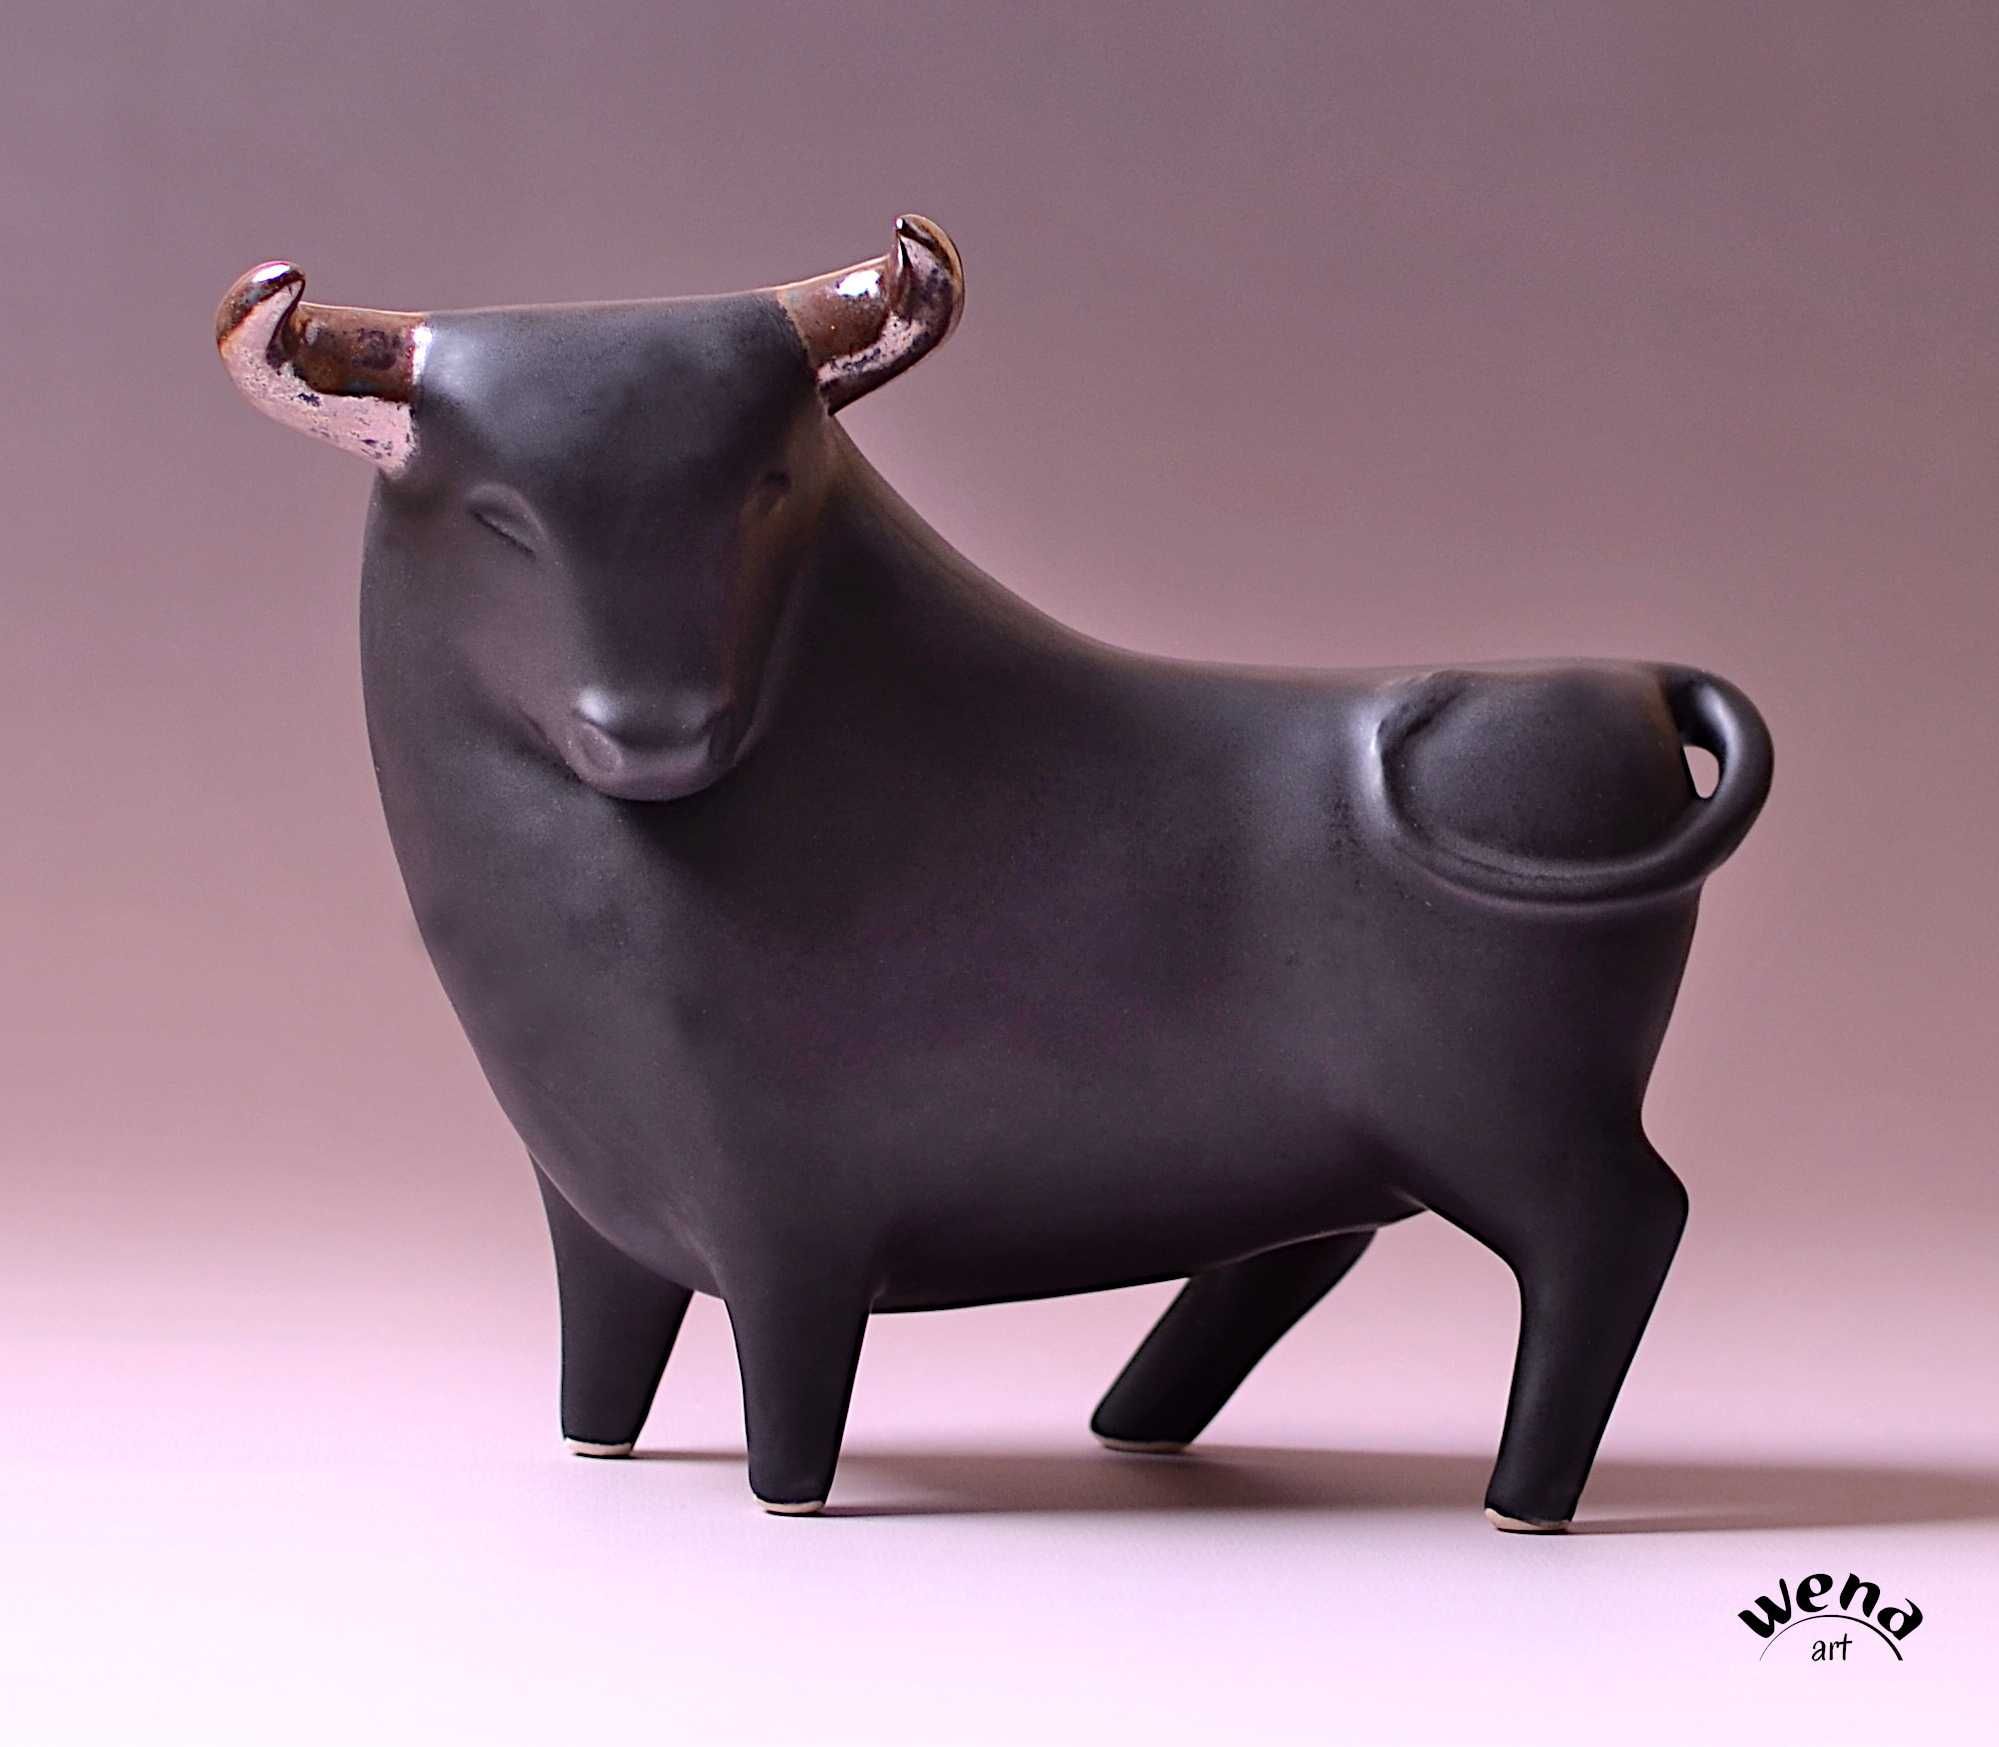 Figura byka byk ceramiczny